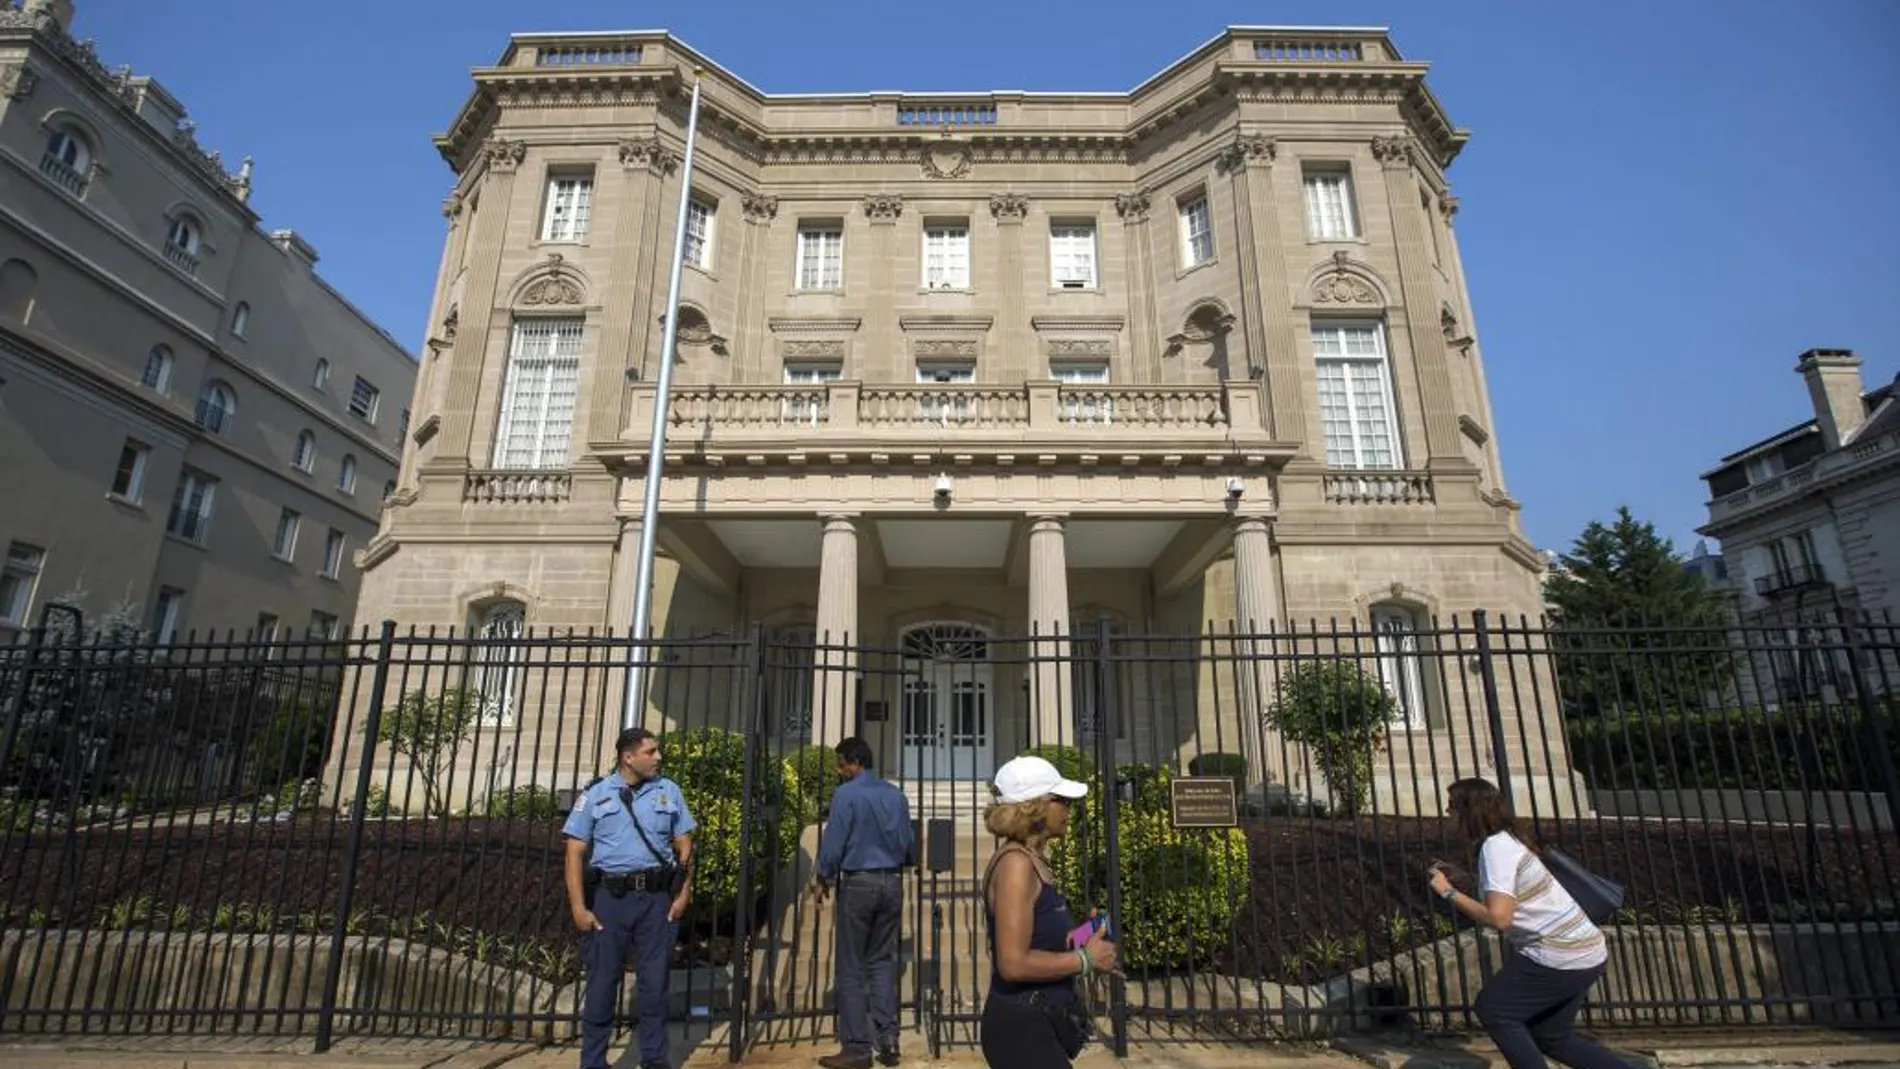 Vista del edificio que alberga la Sección de Intereses de Cuba, y que fue la primera embajada cubana en Estados Unidos en 1961, en Washington